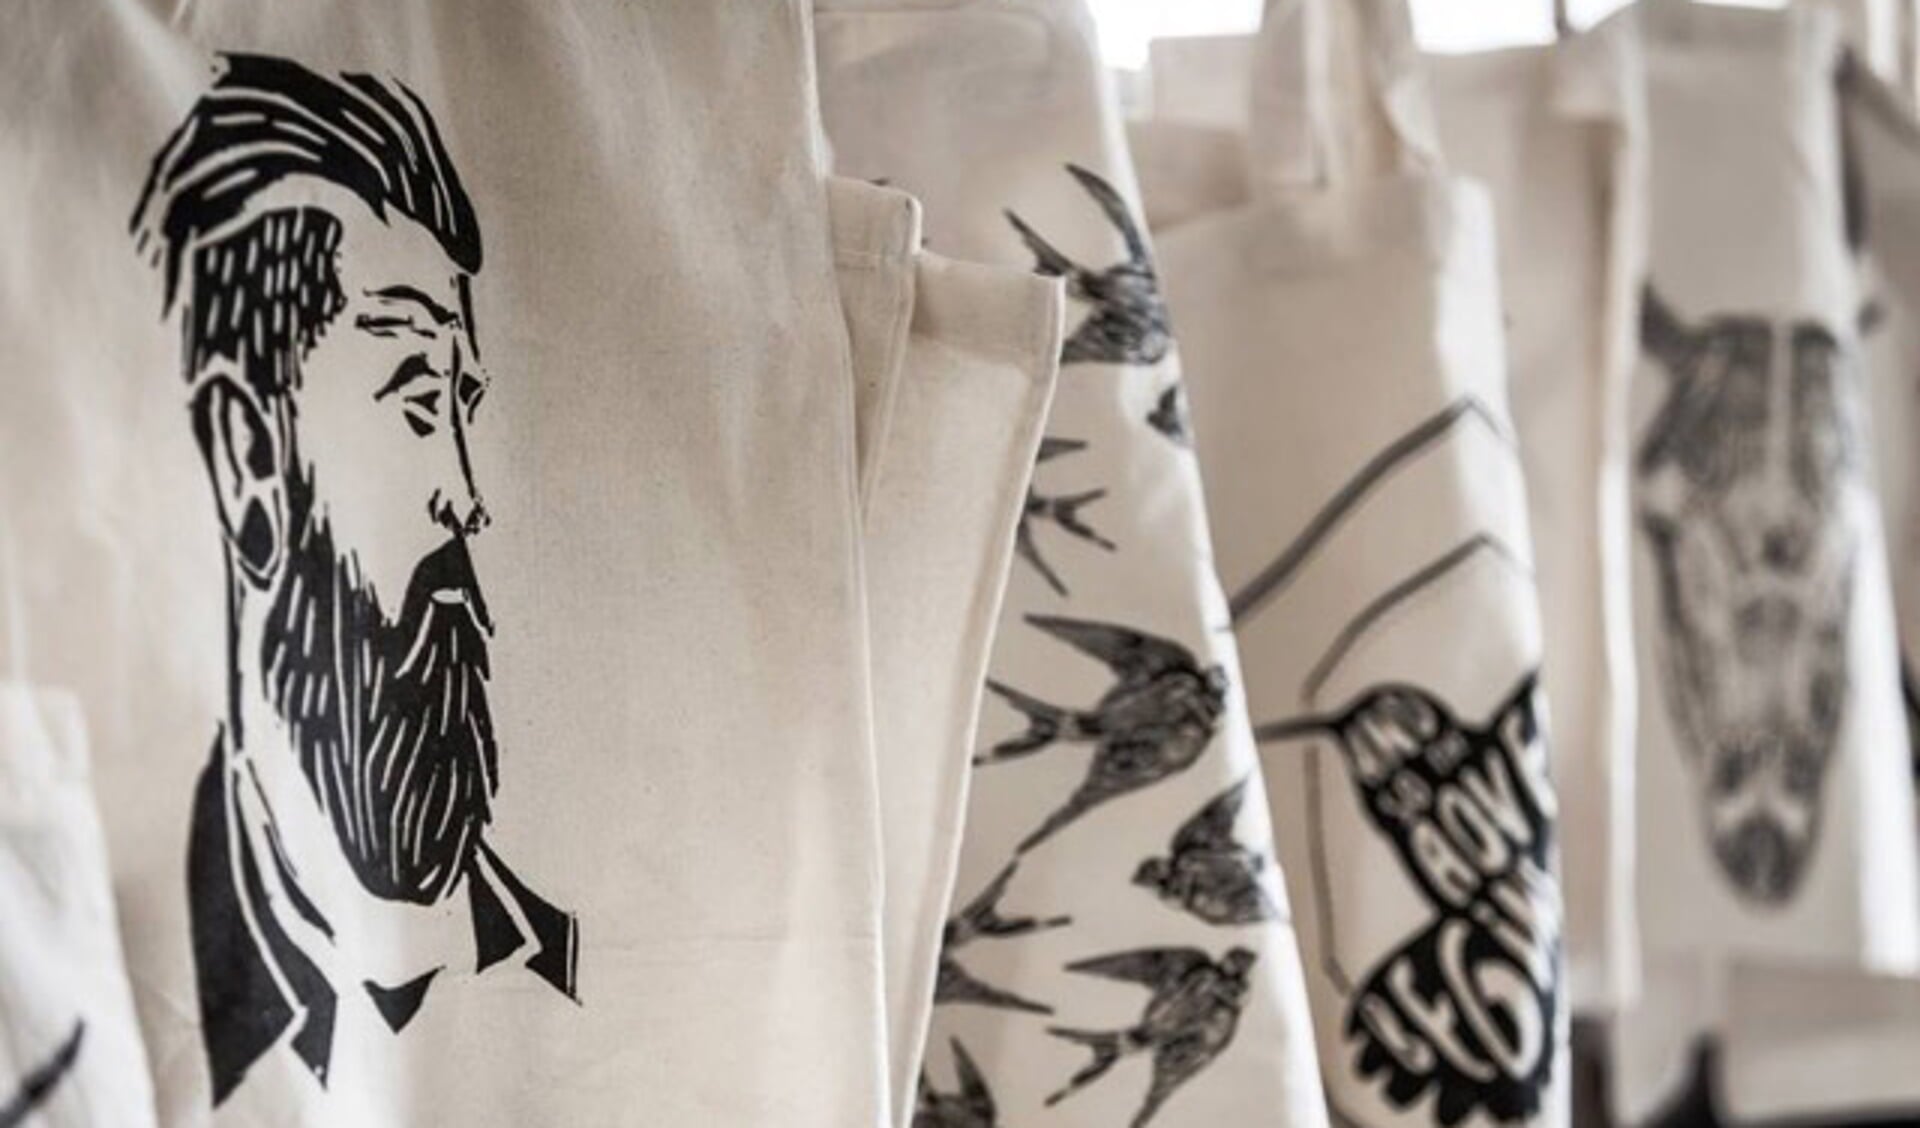 Een voorbeeld van de producten: canvas tassen met art prints van Nadie van Wijk. Foto: PR